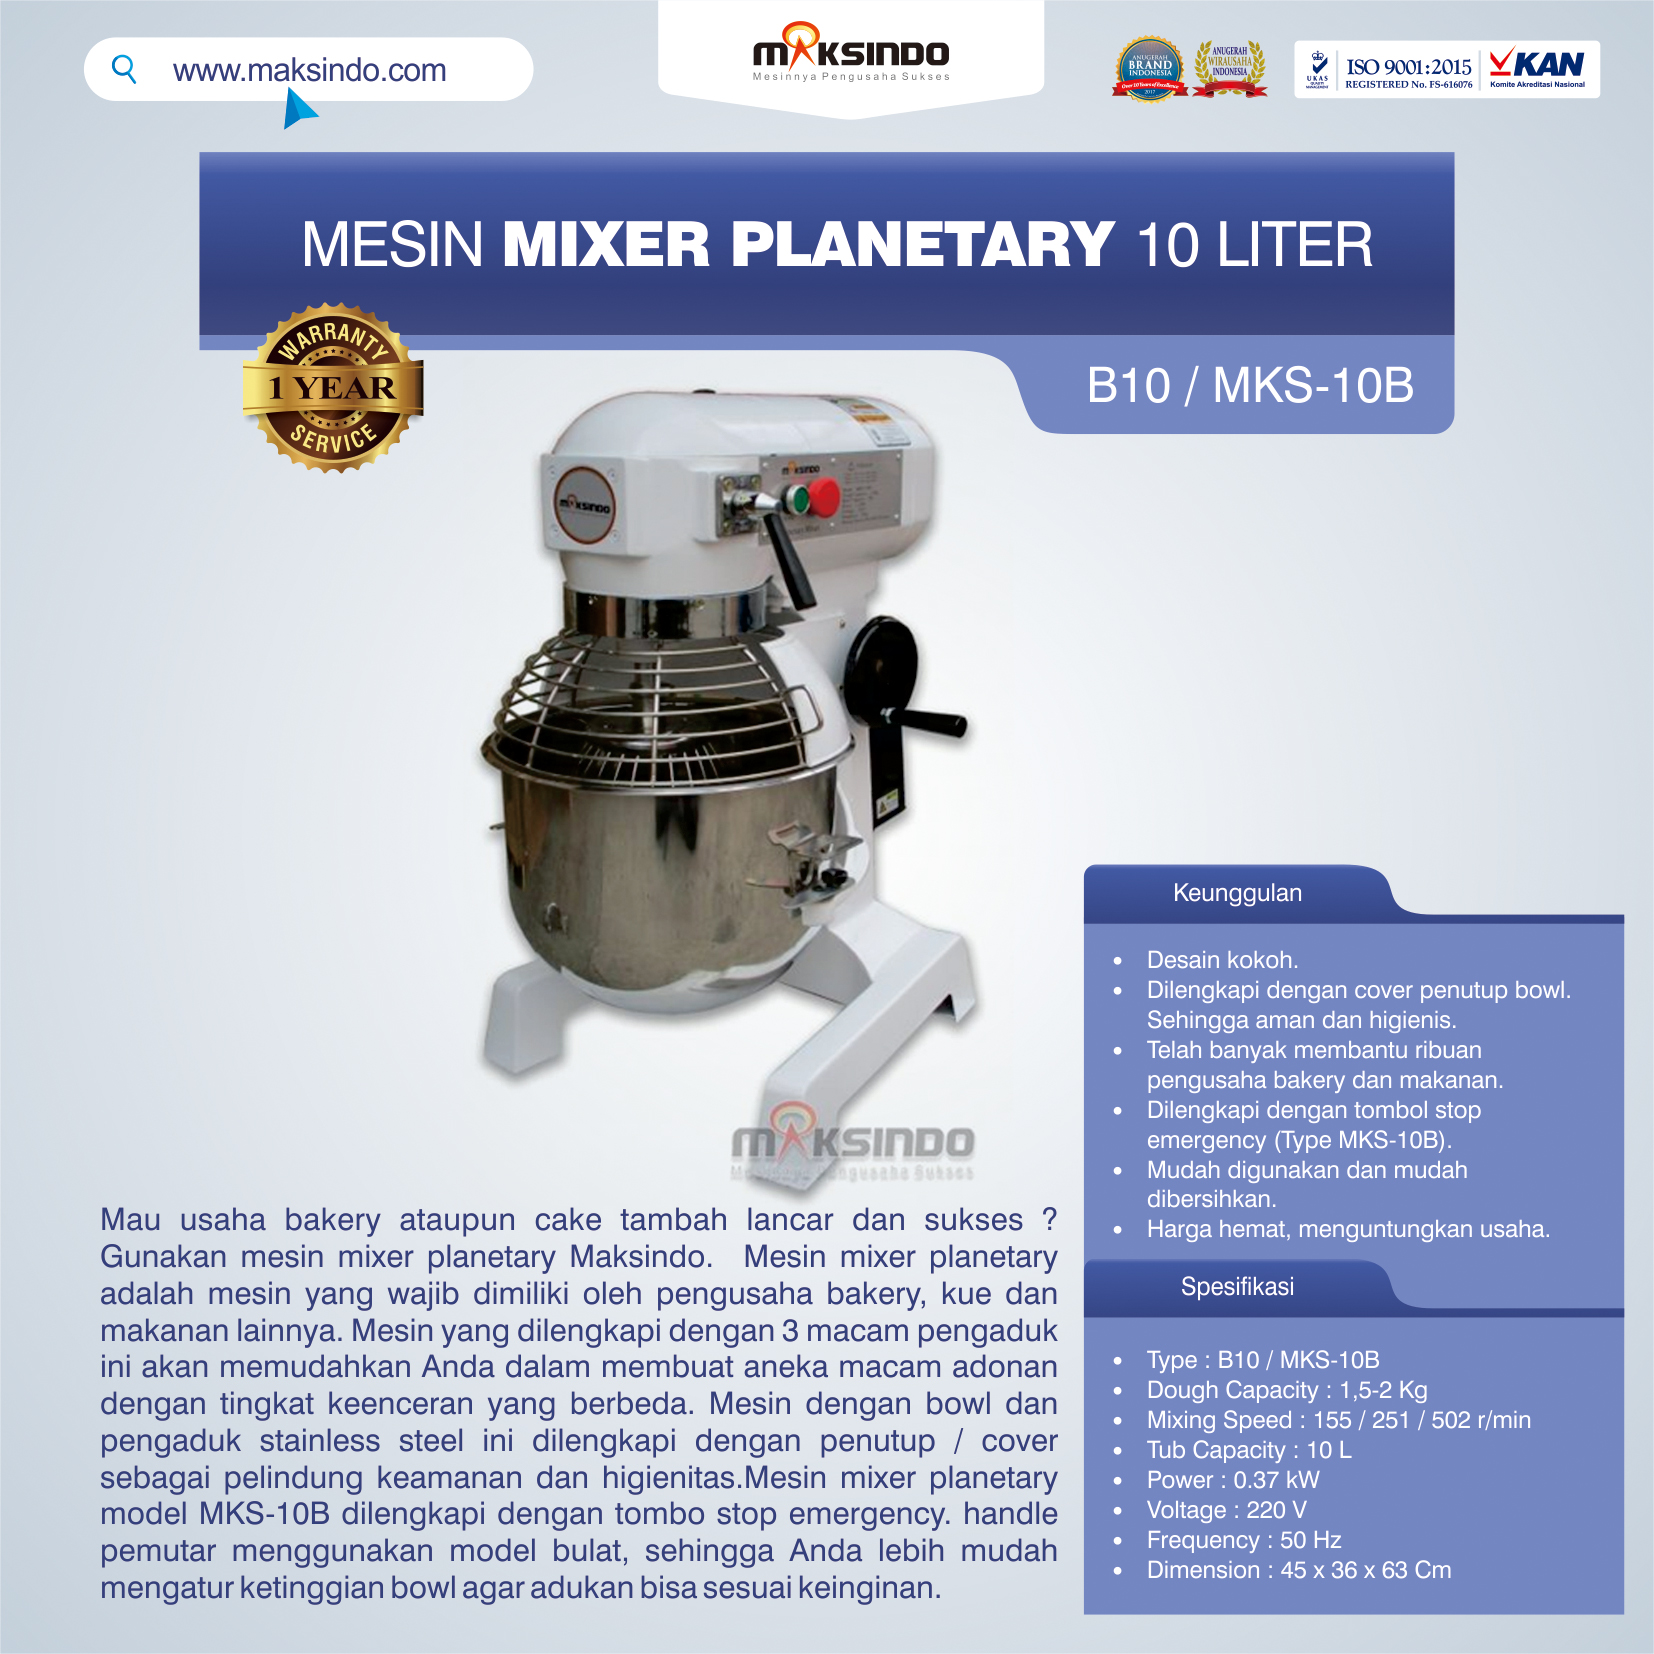 Jual Mesin Mixer Planetary 10 Liter (MKS-10B) di Palembang